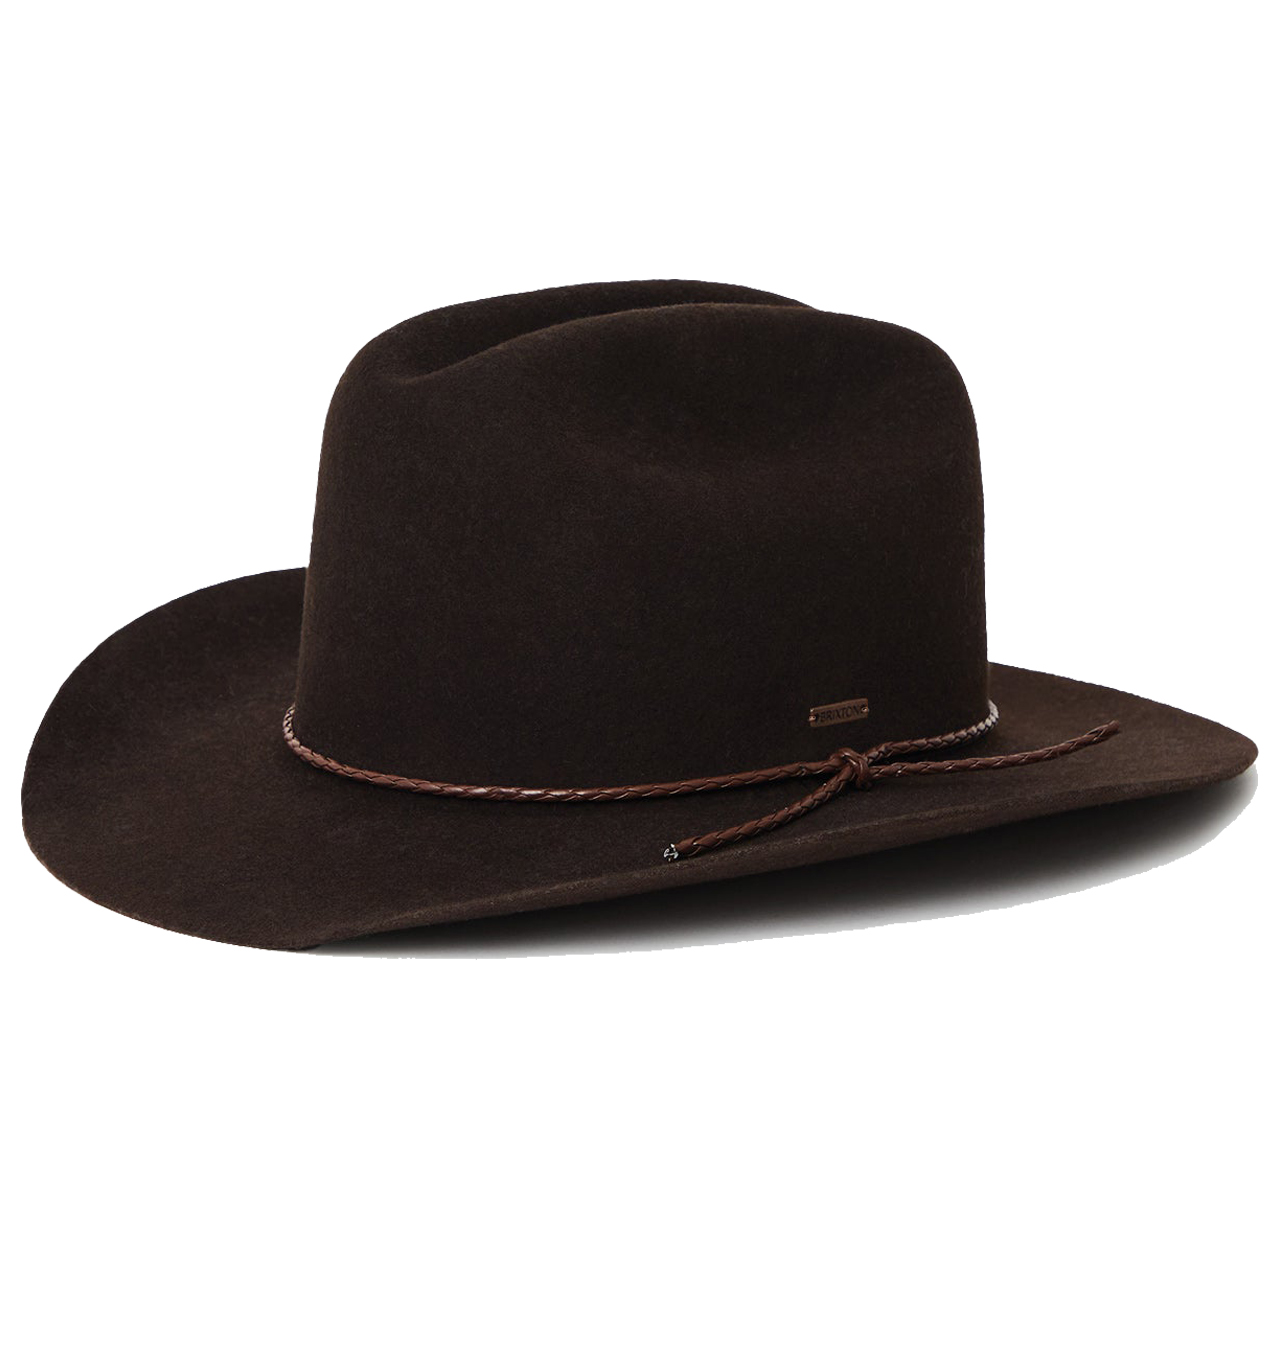 Brixton---Vasquez-Reserve-Cowboy-Hat---Chocolate1